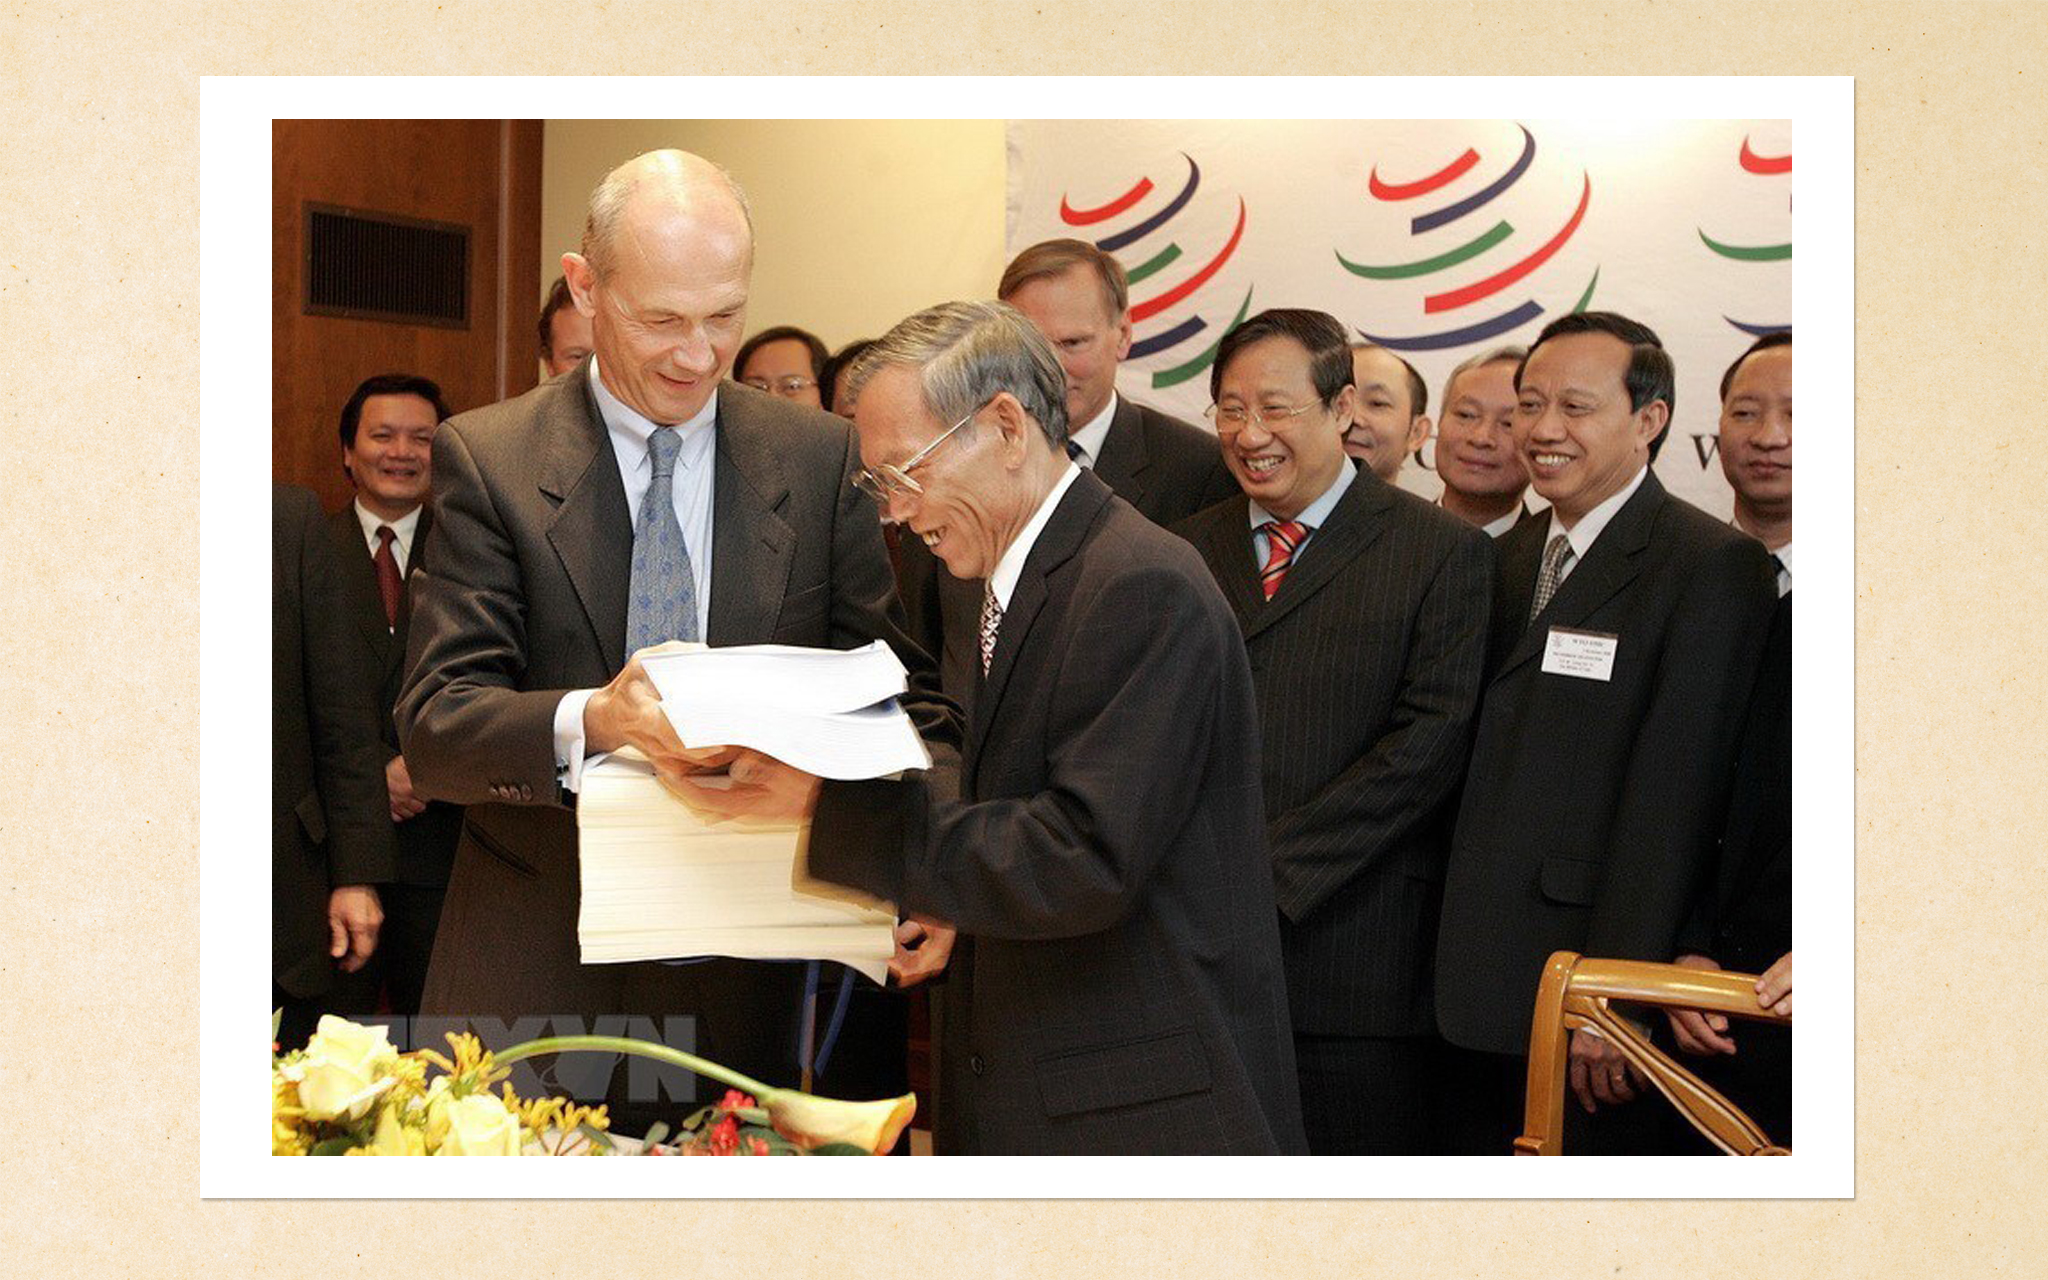 Với việc gia nhập ASEAN, lòng tin giữa Việt Nam với các nước láng giềng được nâng lên rõ rệt. Hội nhập của Việt Nam hiệu quả hơn, không chỉ là hội nhập khu vực mà là hội nhập thế giới, trong đó có bước ngoạt Việt Nam gia nhập Tổ chức Thương mại Thế giới (WTO). Trong ảnh: Trước sự chứng kiến của Phó Thủ tướng Phạm Gia Khiêm, Tổng Giám đốc WTO Pascal Lamy trao các văn kiện về việc kết nạp Việt Nam trở thành thành viên chính thức thứ 150 của WTO cho Bộ trưởng Thương mại Việt Nam Trương Đình Tuyển, tại buổi lễ kết nạp Việt Nam vào WTO, ngày 7/11/2006, tại trụ sở WTO ở Geneva (Thụy Sĩ). (Ảnh: AFP/TTXVN)